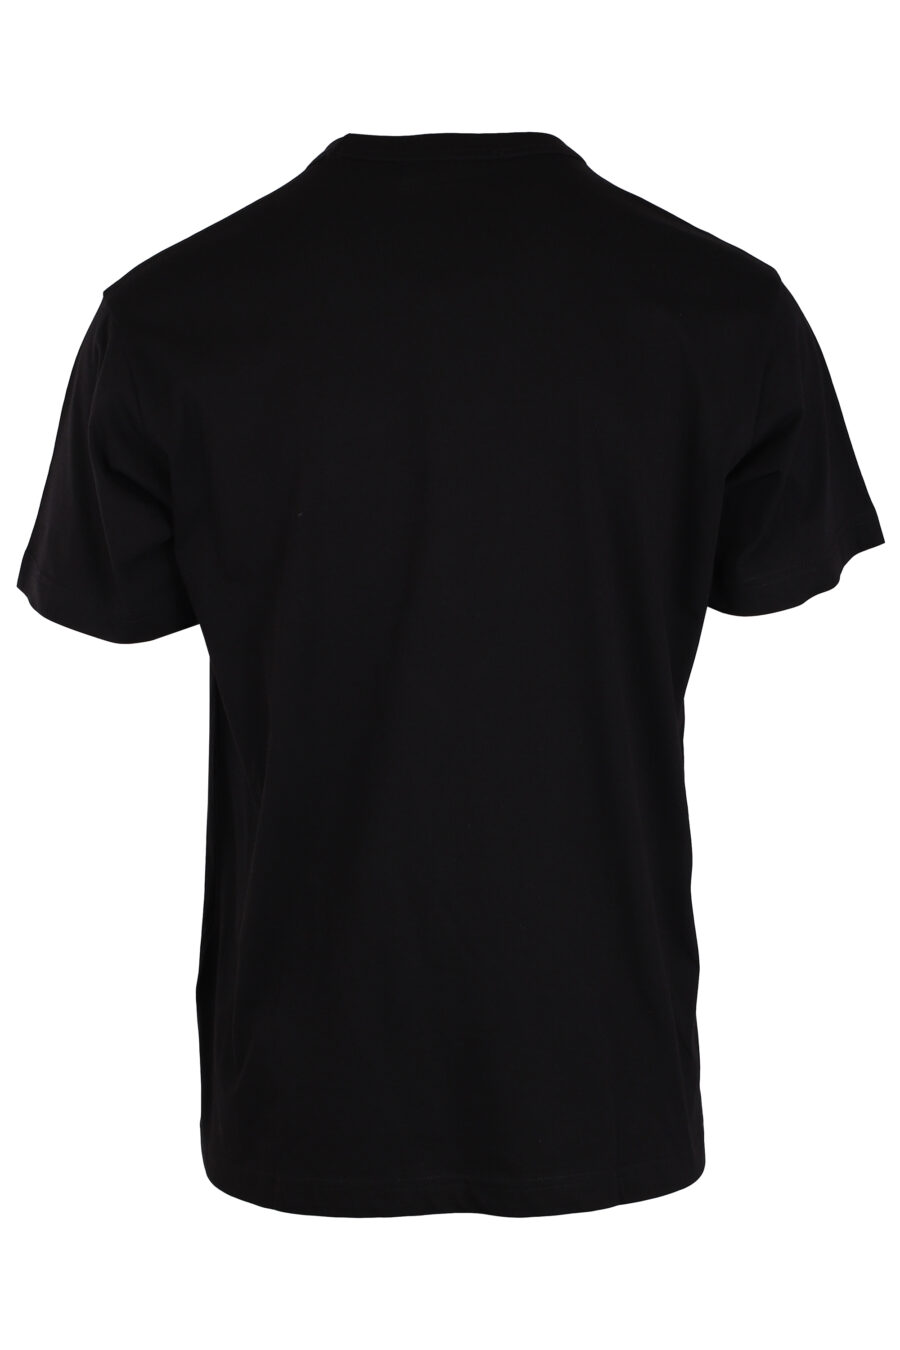 T-shirt black with large orange logo - IMG 4020